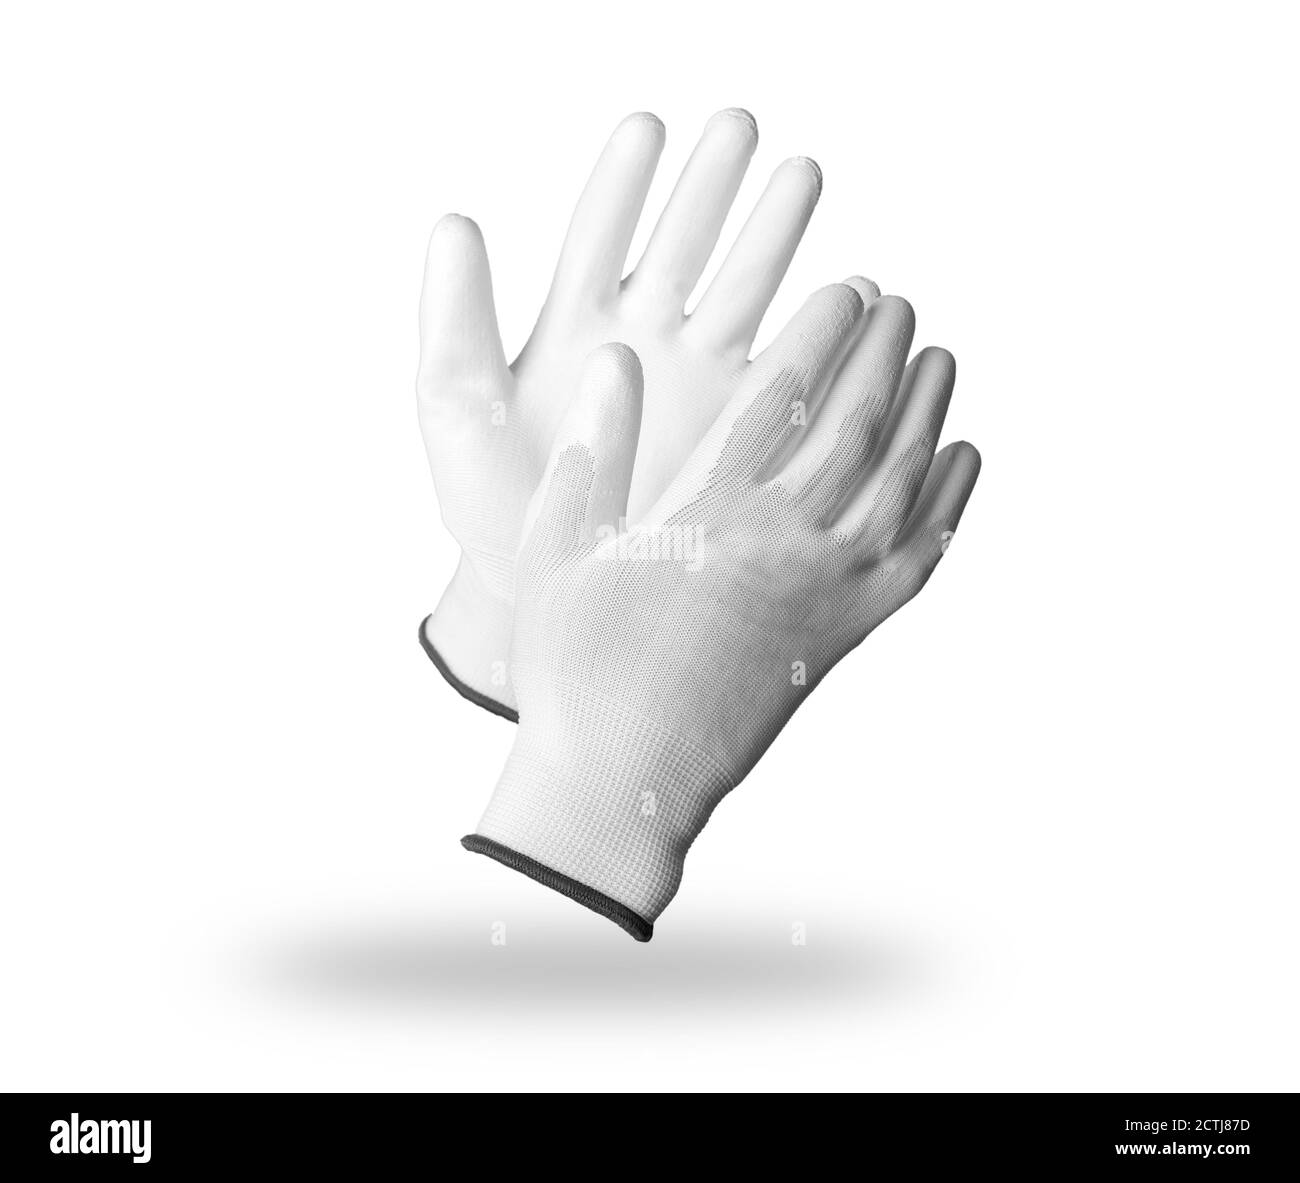 Par de guantes de trabajo de protección blancos aislados sobre fondo blanco con sombra suave Foto de stock